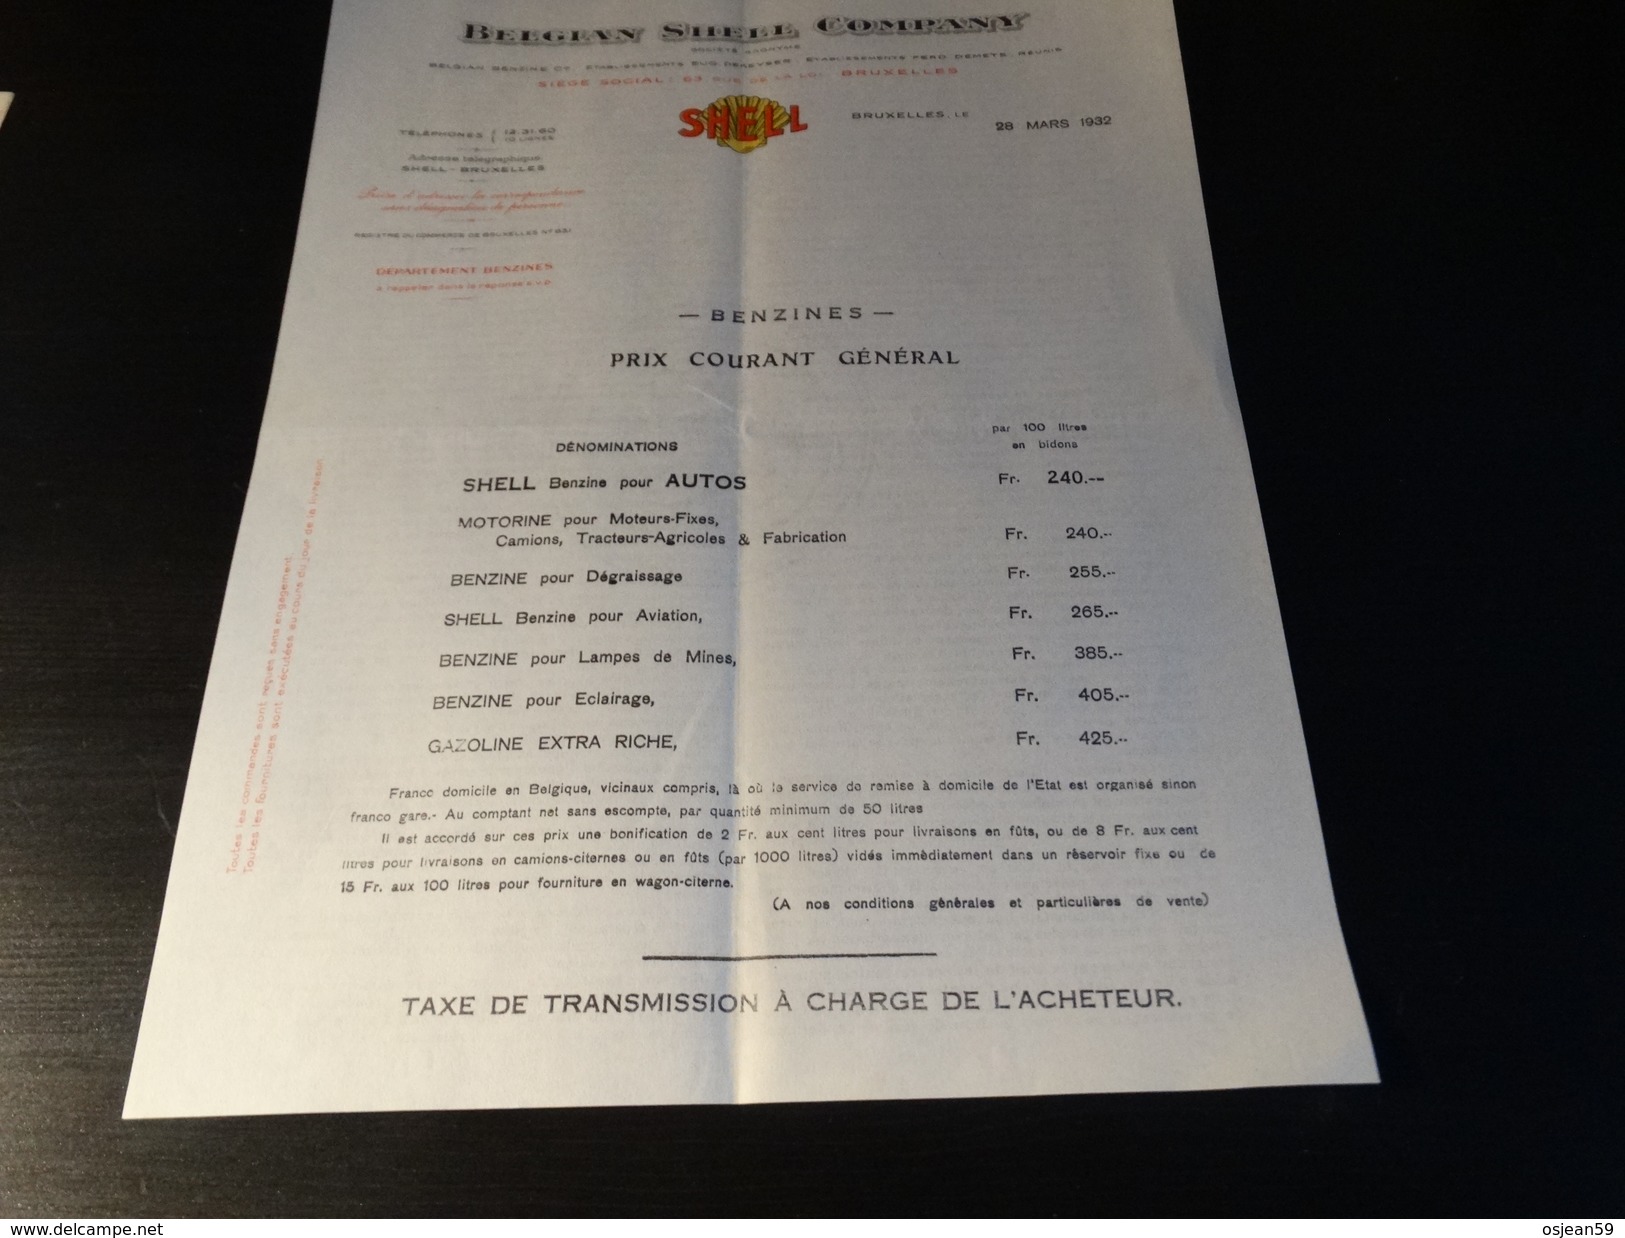 Belgian Schell Company- Benzines-prix Courant Général - 28/03/1932 - Automobile